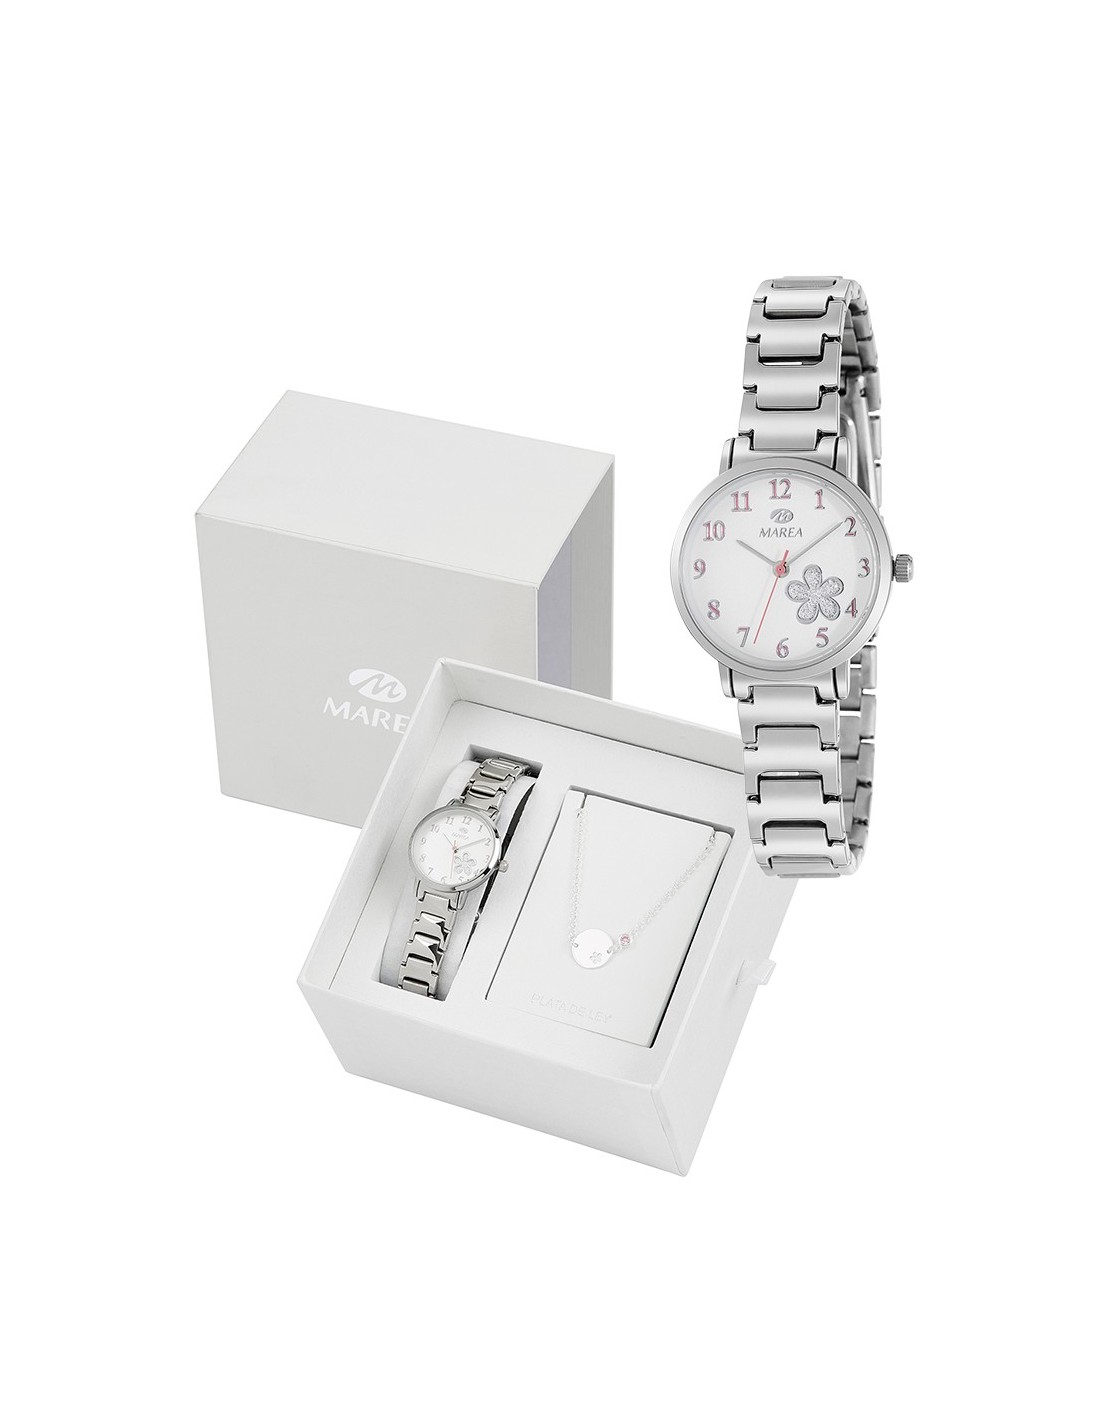 Reloj para niña de comunión con pulsera de plata de regalo.